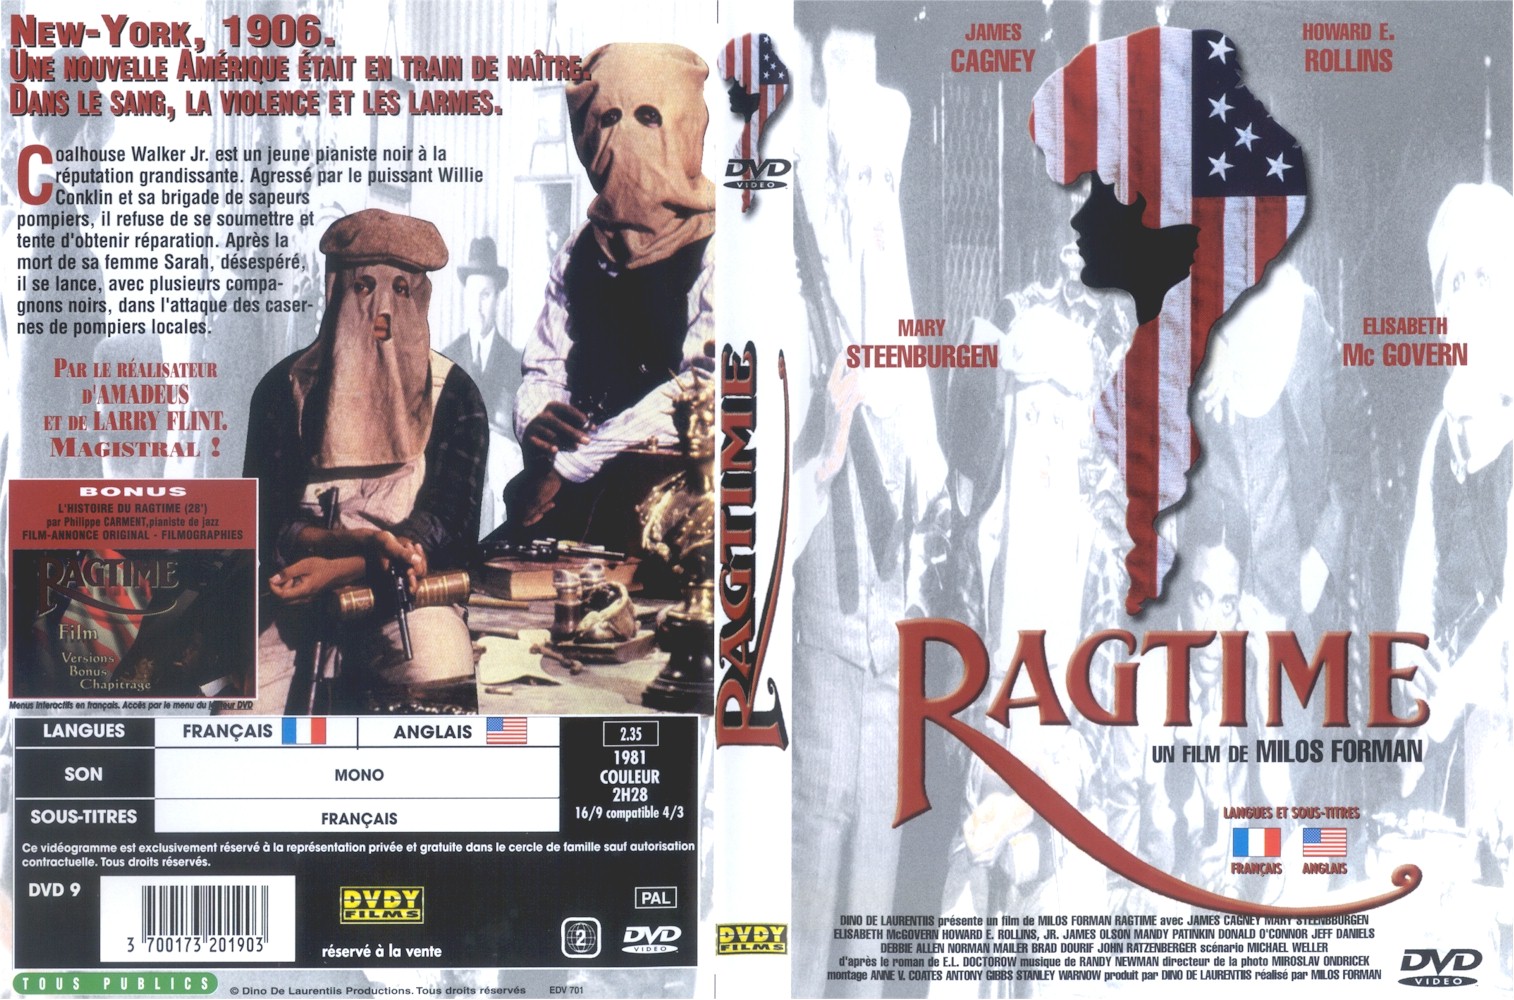 Jaquette DVD Ragtime v2